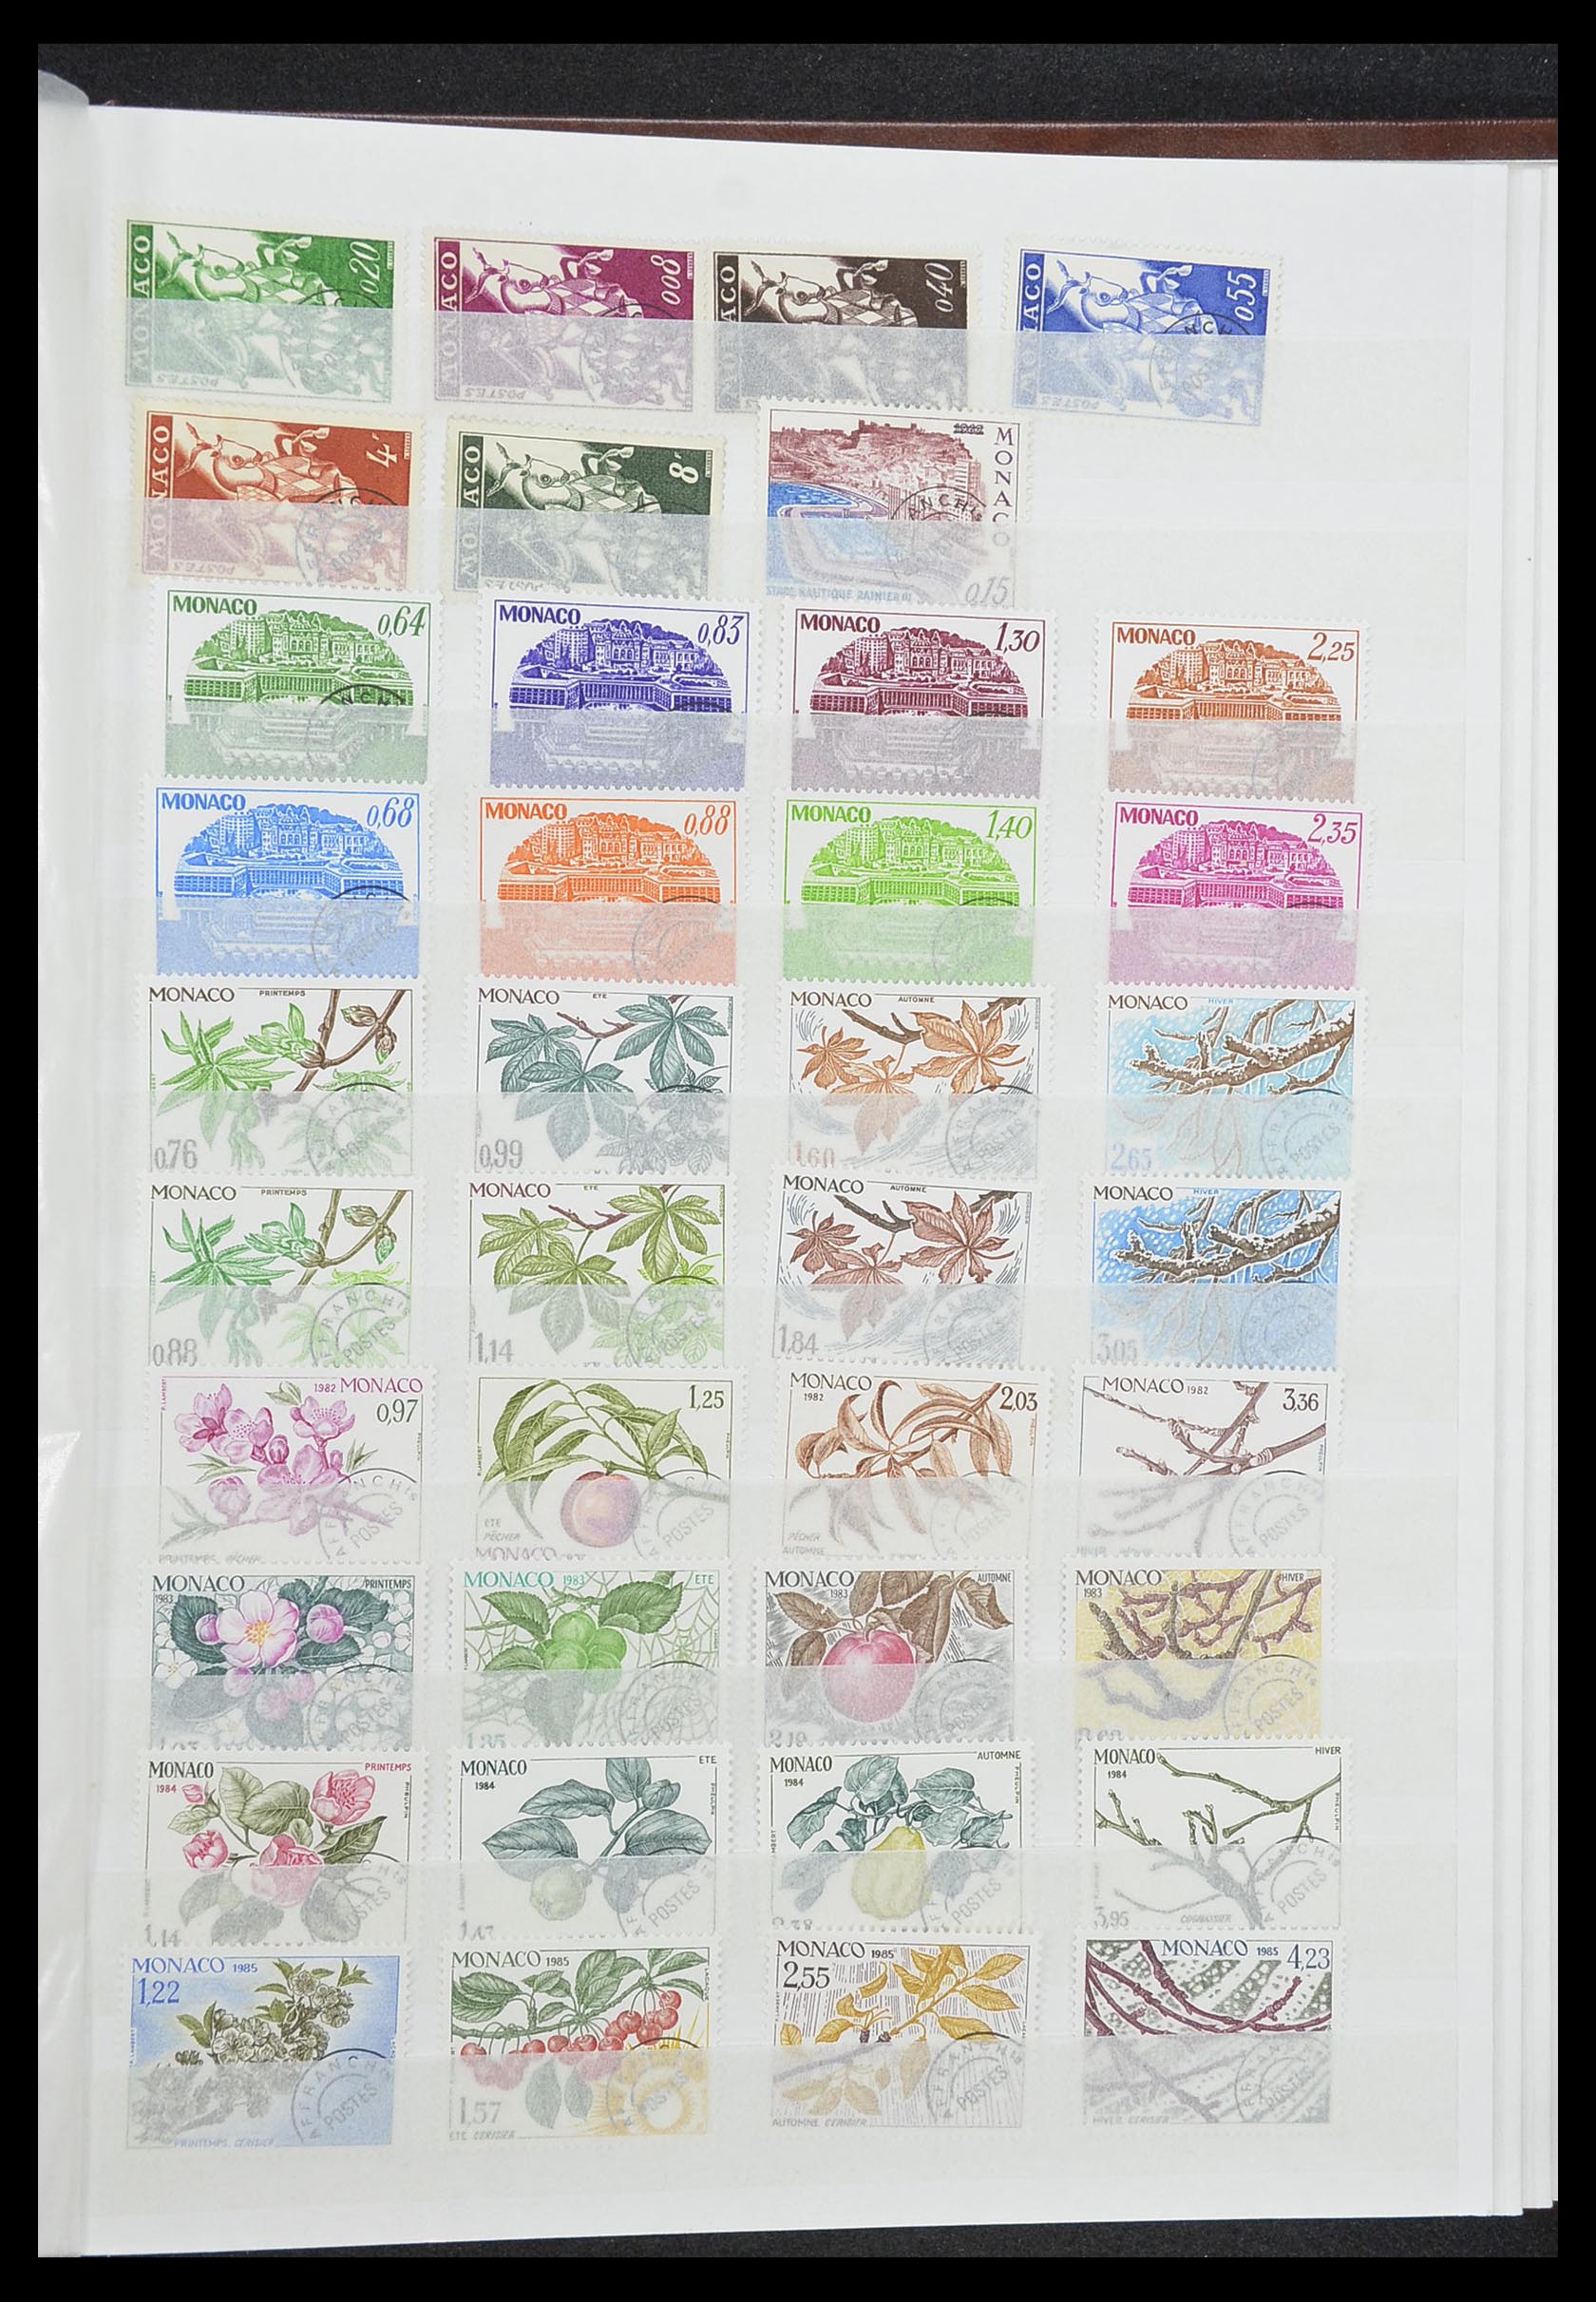 33833 047 - Stamp collection 33833 Monaco souvenir sheets 1979-2015.